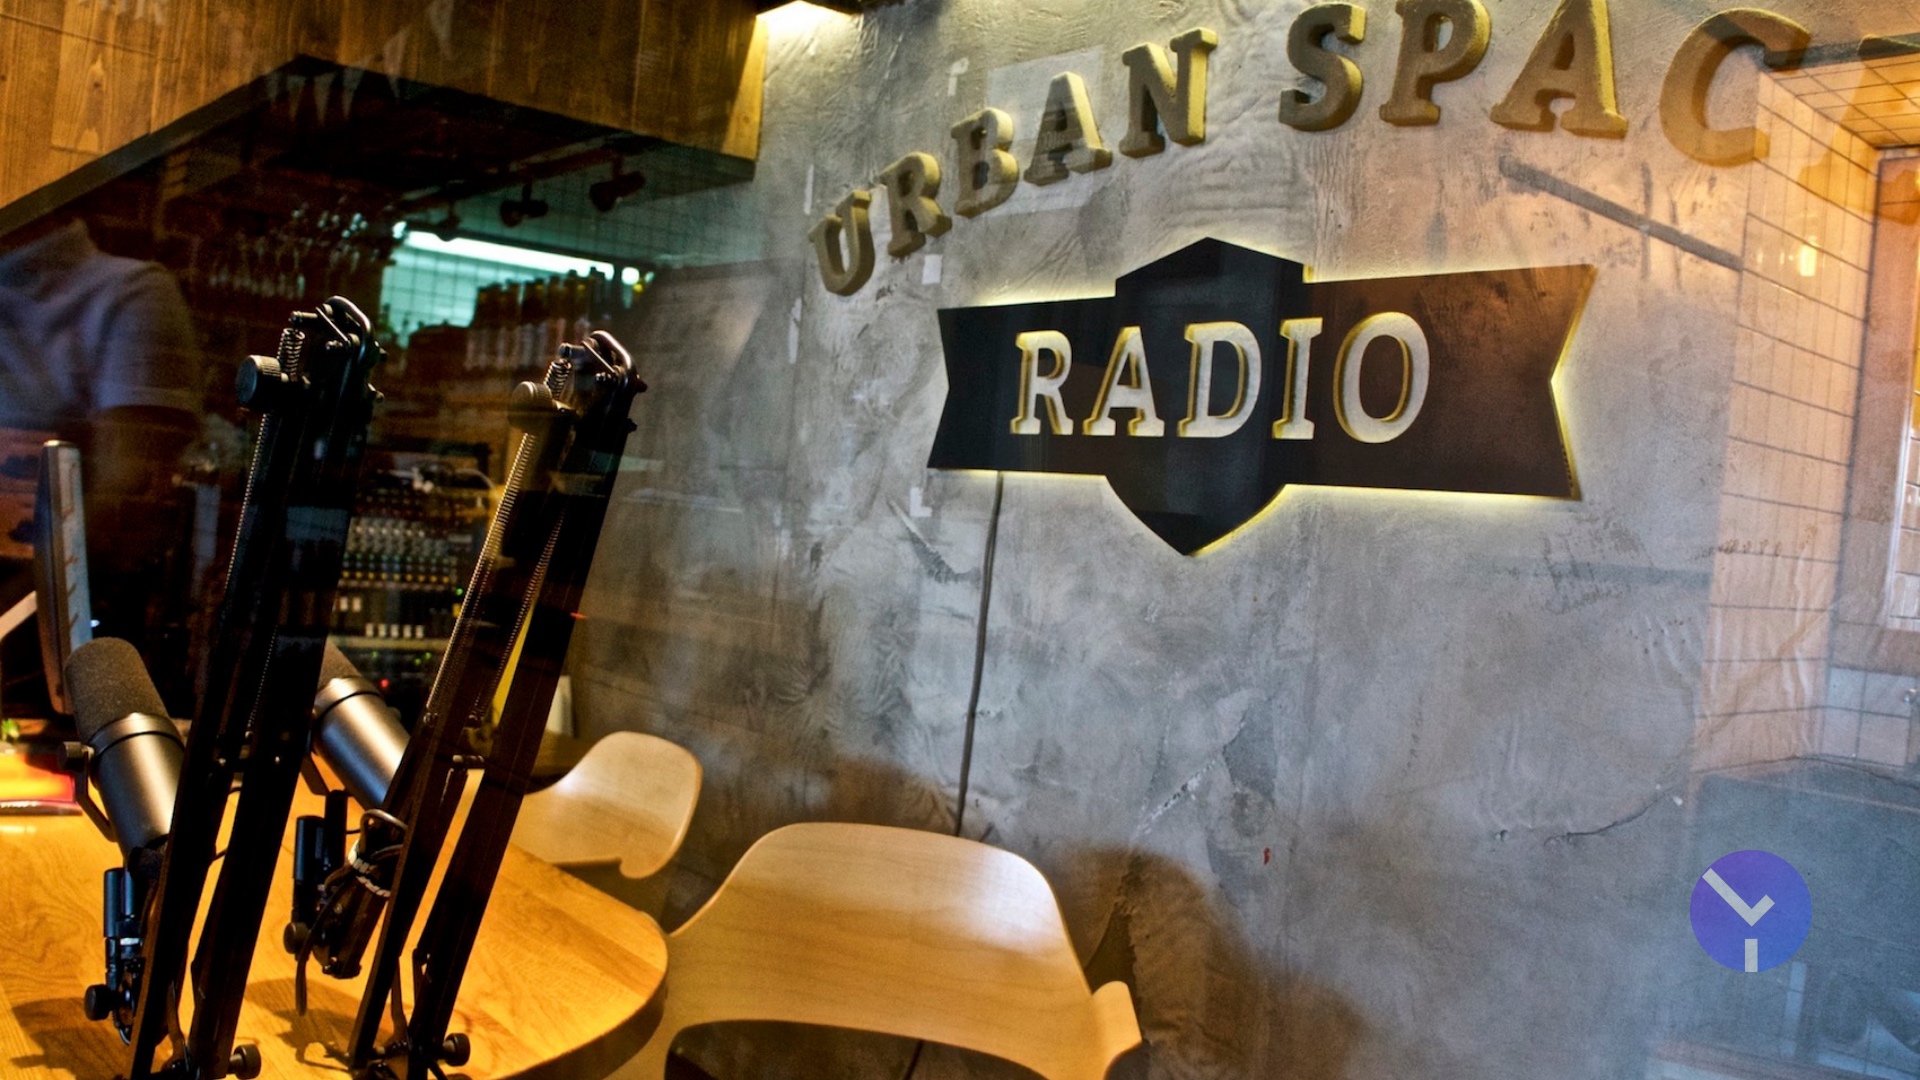 Ідея, ресторан, радіостанція, зміна сенсів — що таке Urban Space